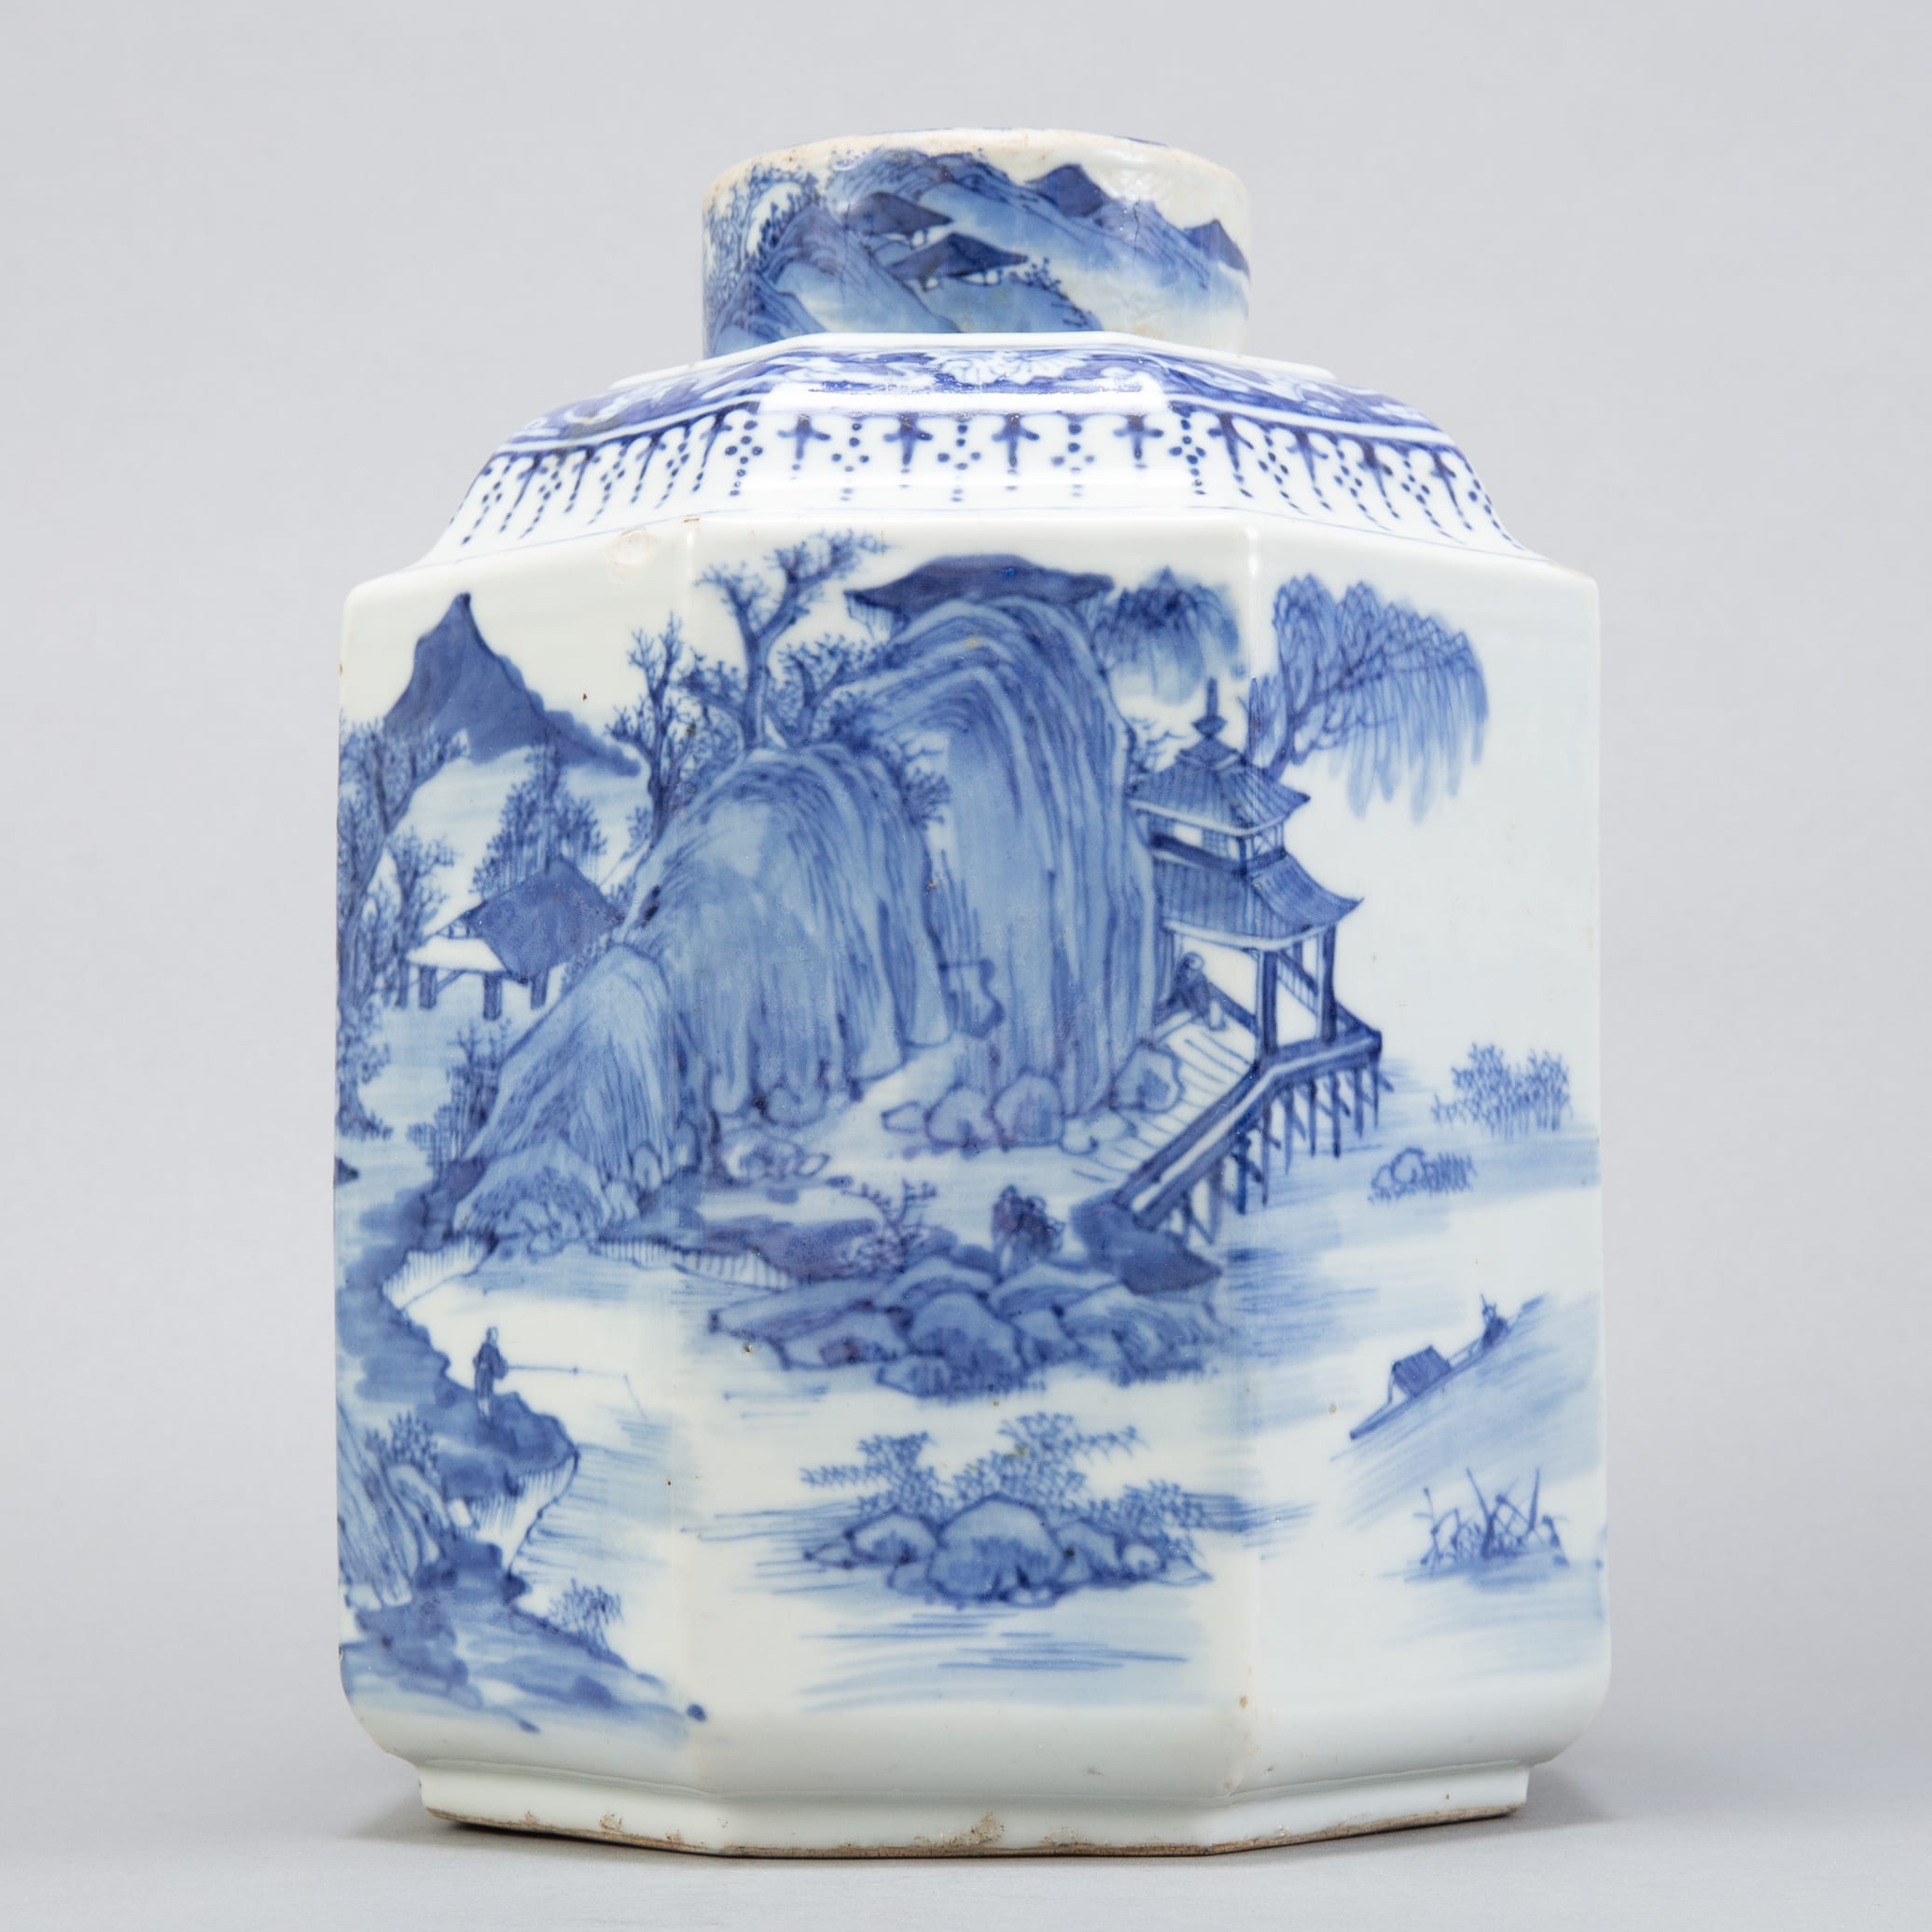 Lot 273: 19th c. Chinese Porcelain Jar w/ Landscape Scenes